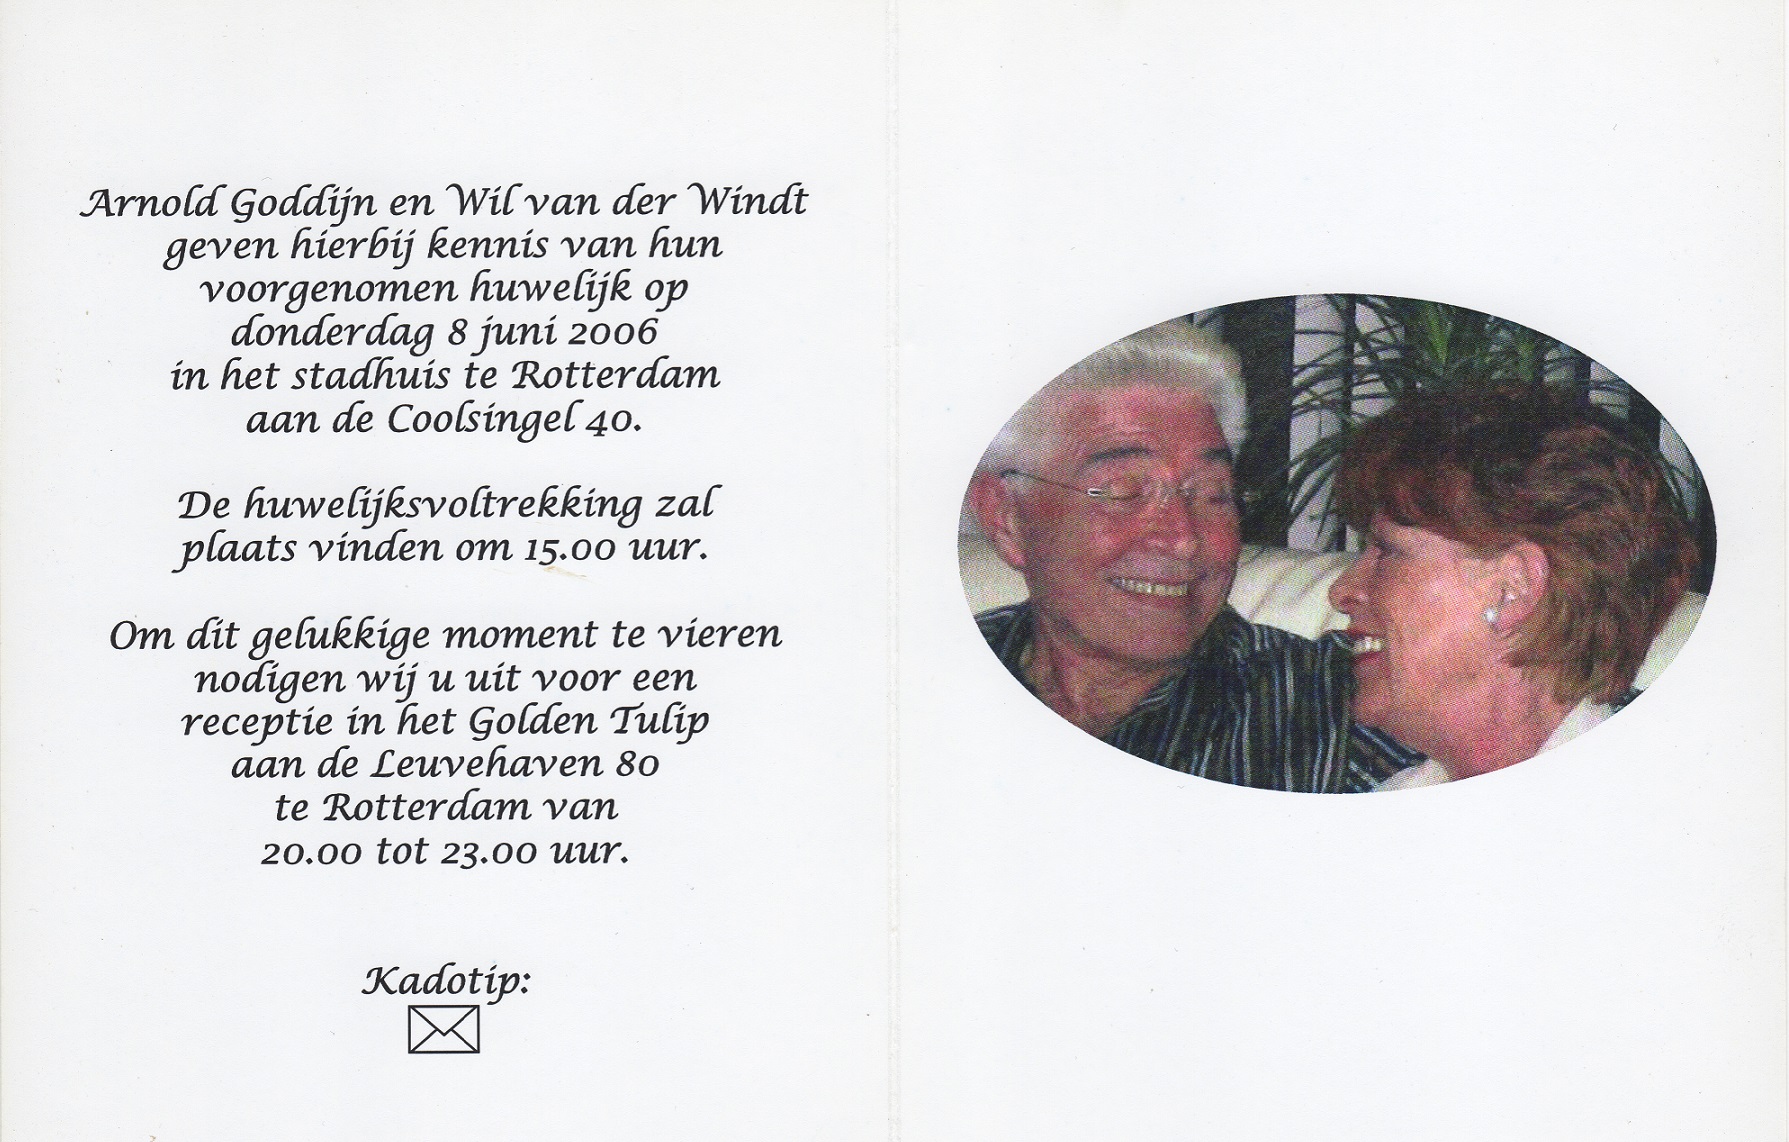 2006-06-08 Wilhelmina van der Windt (Trouwkaart Wil en Arnold)